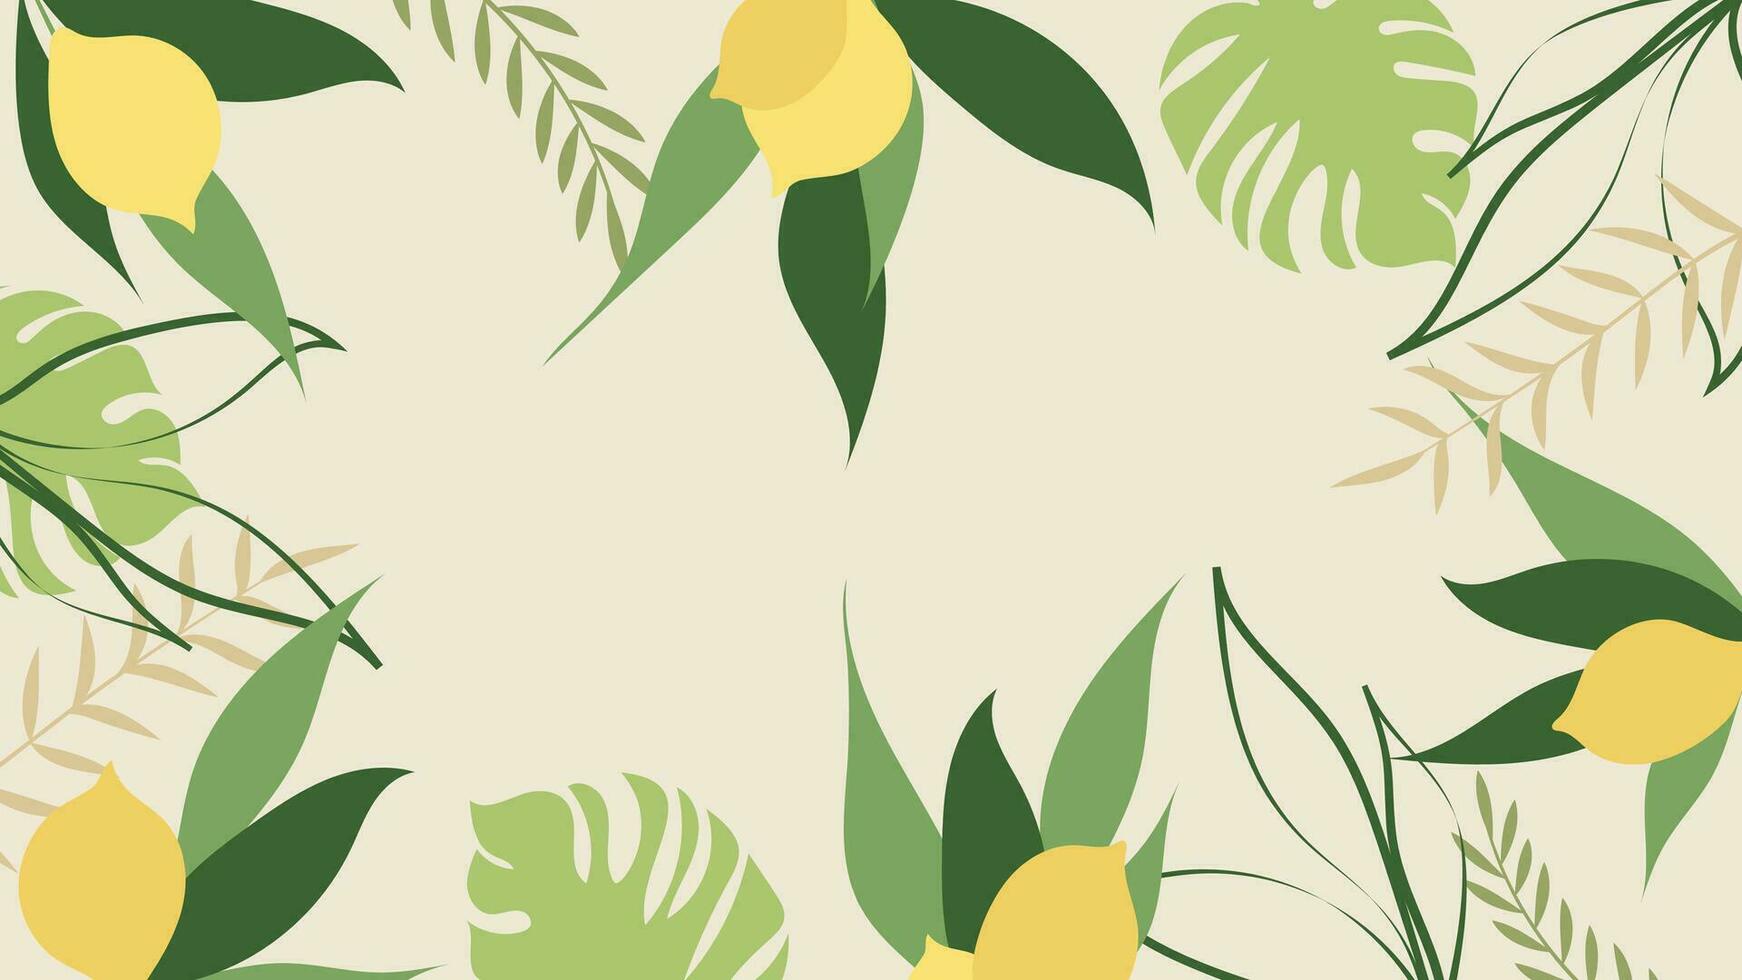 skog tropisk bakgrund vektor illustration. djungel växter, monstera, handflatan blad, citron, exotisk sommartid stil. botanisk bakgrund design för dekoration, tapet, produkt presentation, varumärke.